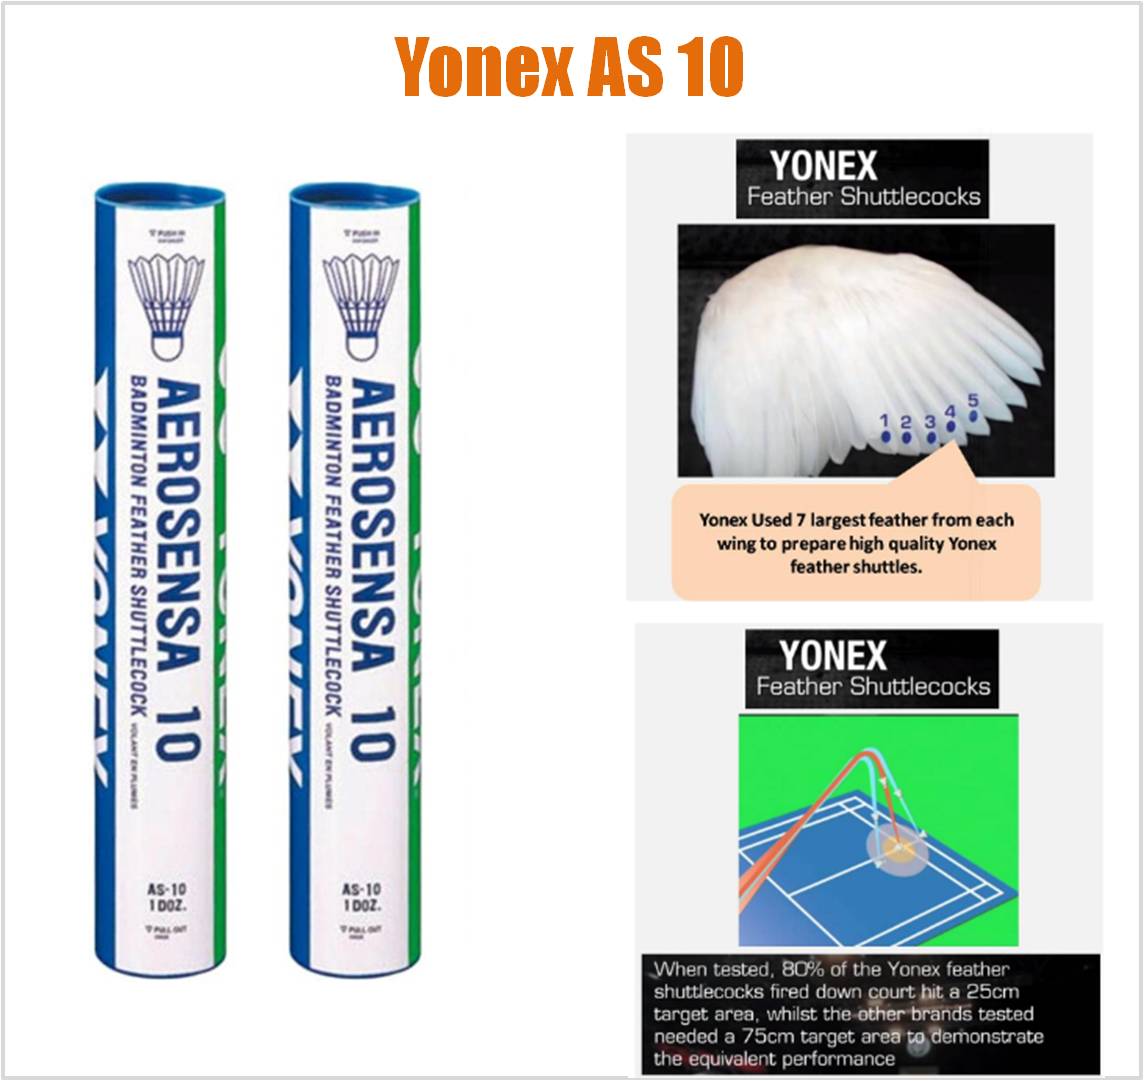 Details_of_Yonex_AS_10_Feather_Shuttlecock.jpg 